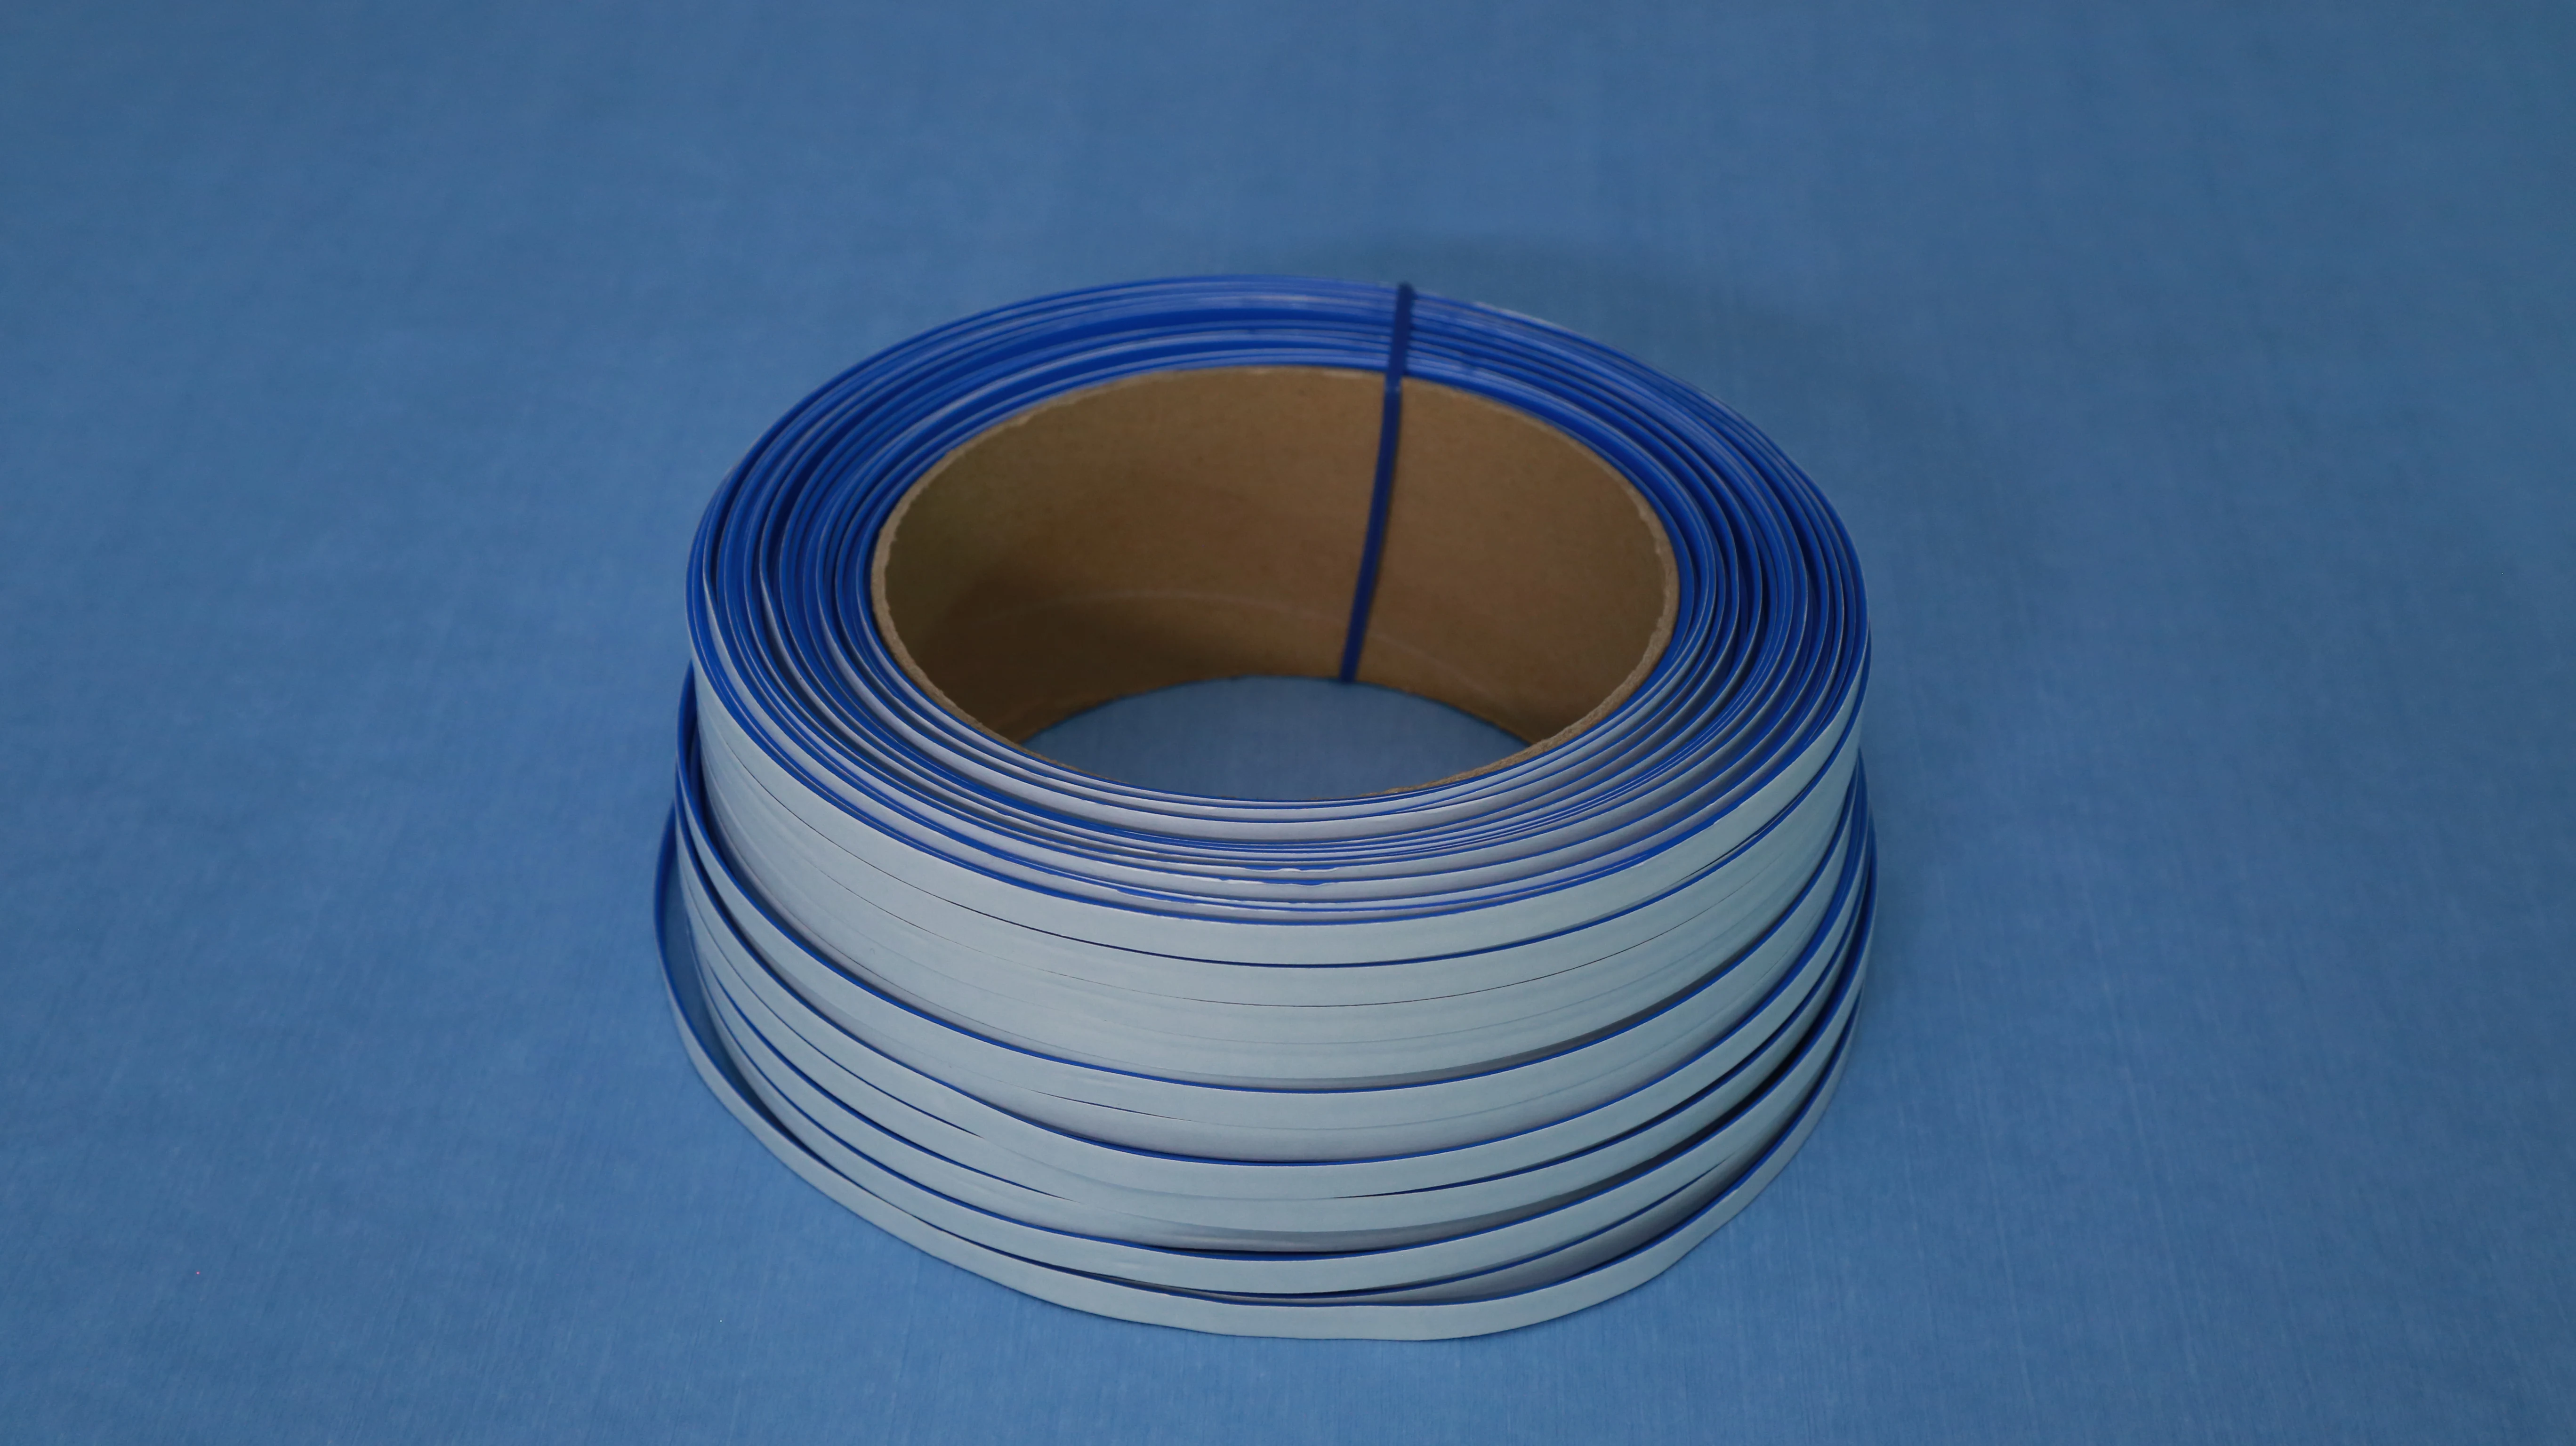 
 Синий стержень с клейкой поверхностью (с гальваническим покрытием из пластика и железа  